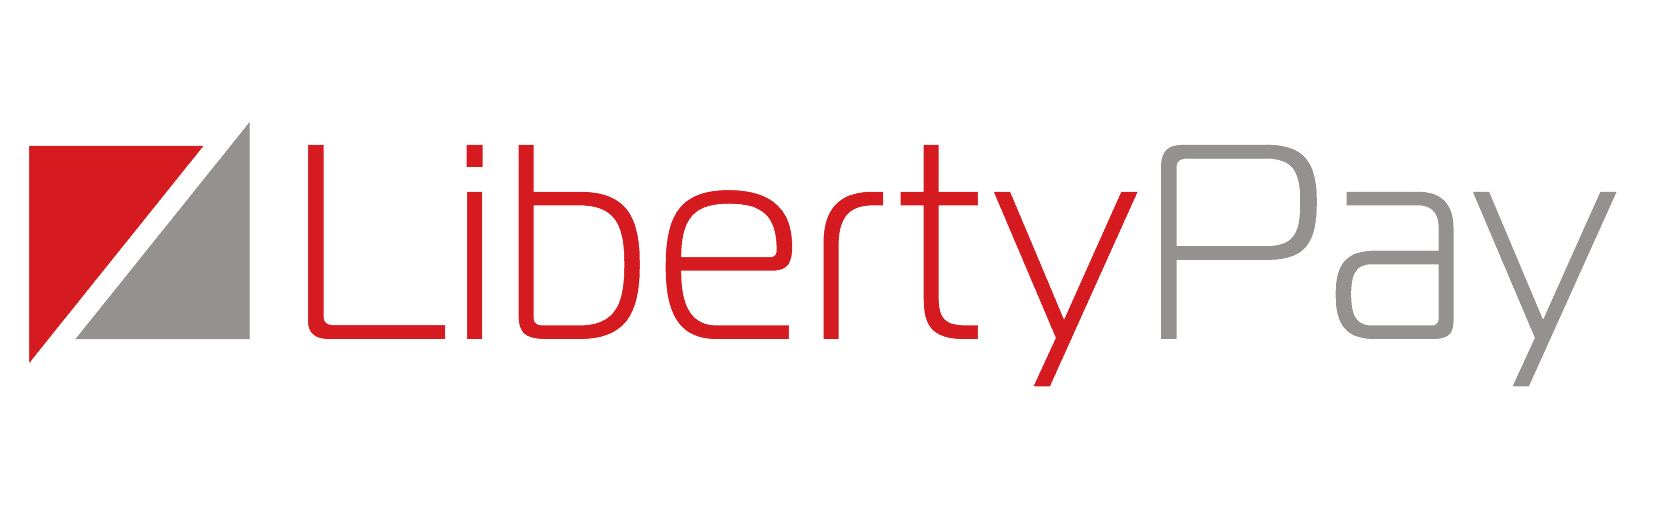 liberty Pay logo